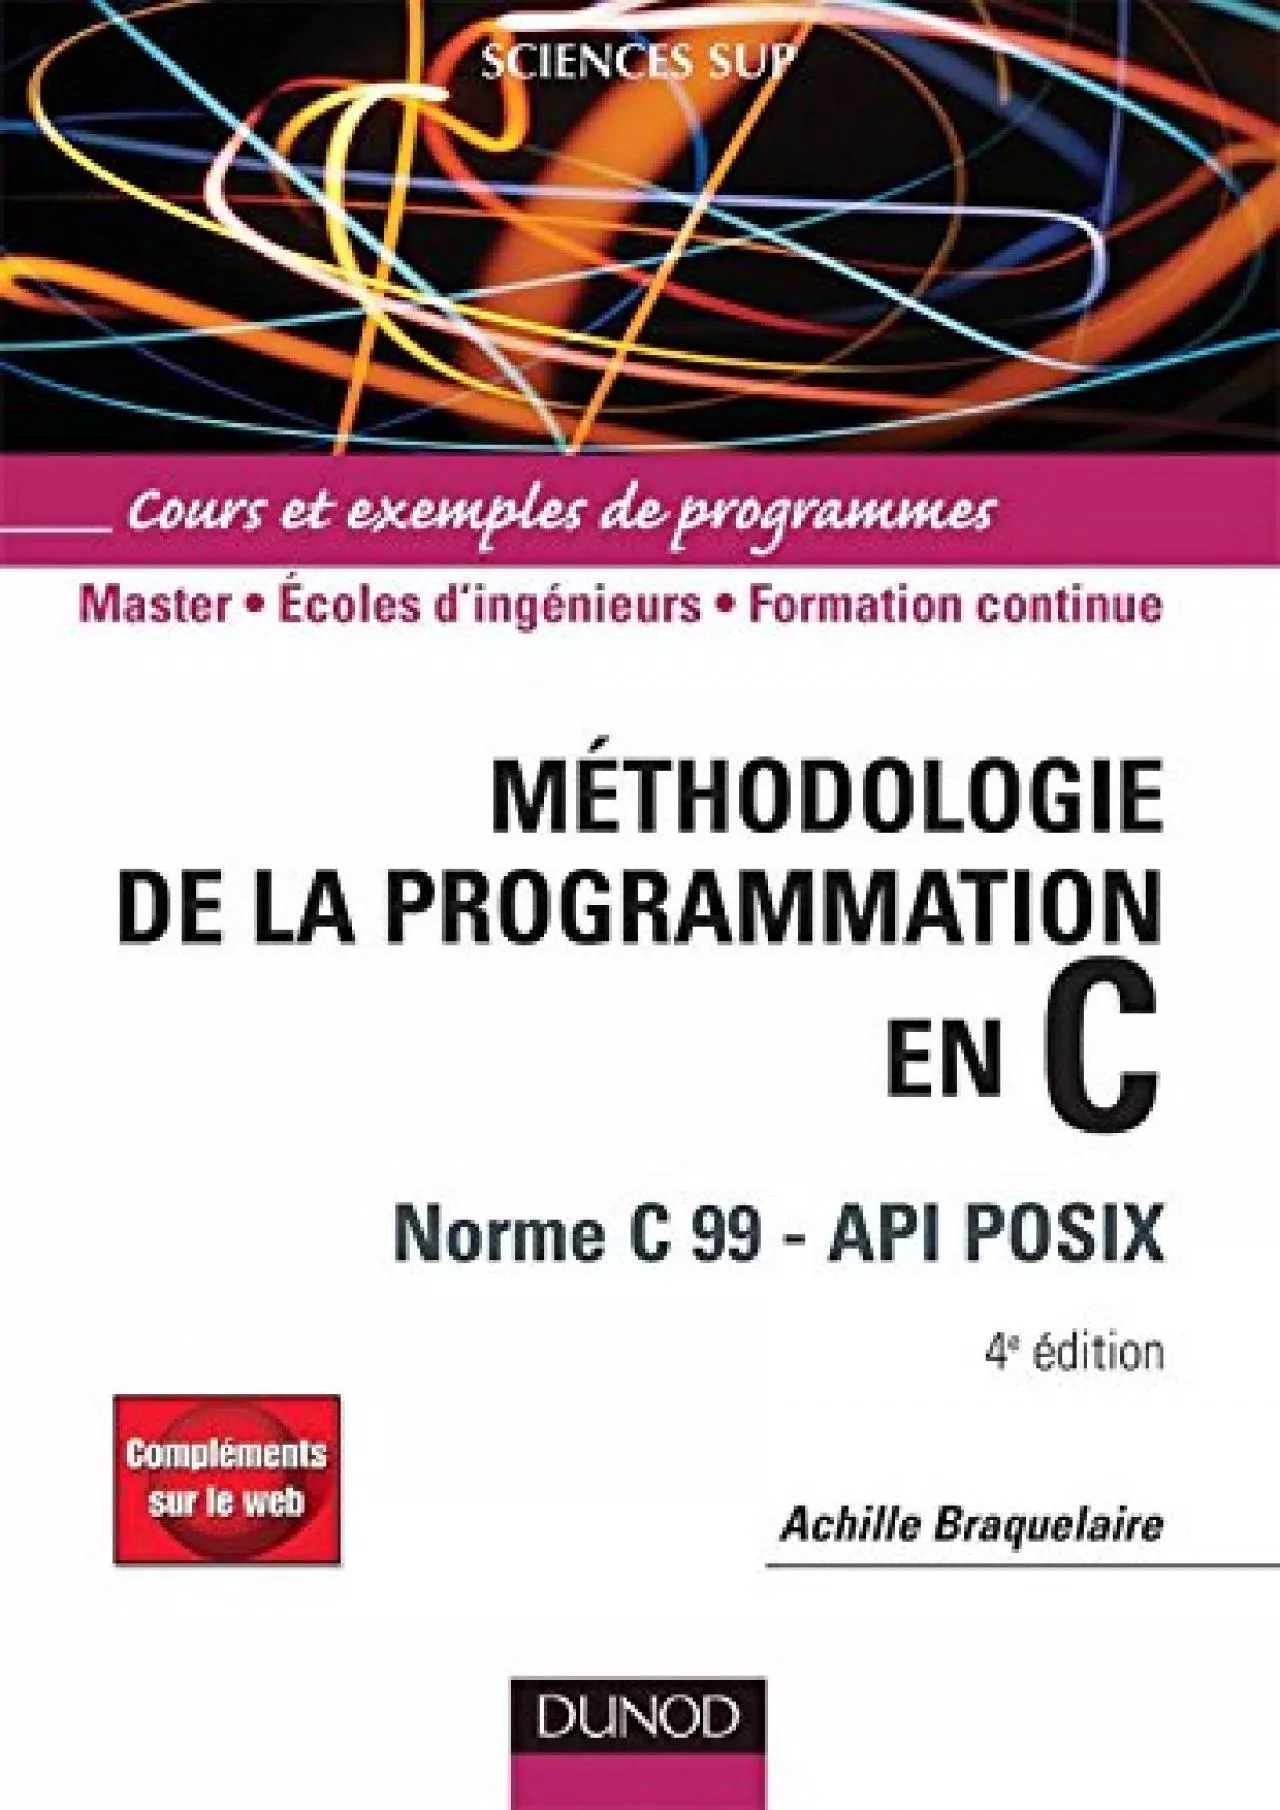 [DOWLOAD]-Méthodologie de la programmation en C - 4e éd - Norme C 99 - API POSIX: Méthodologie